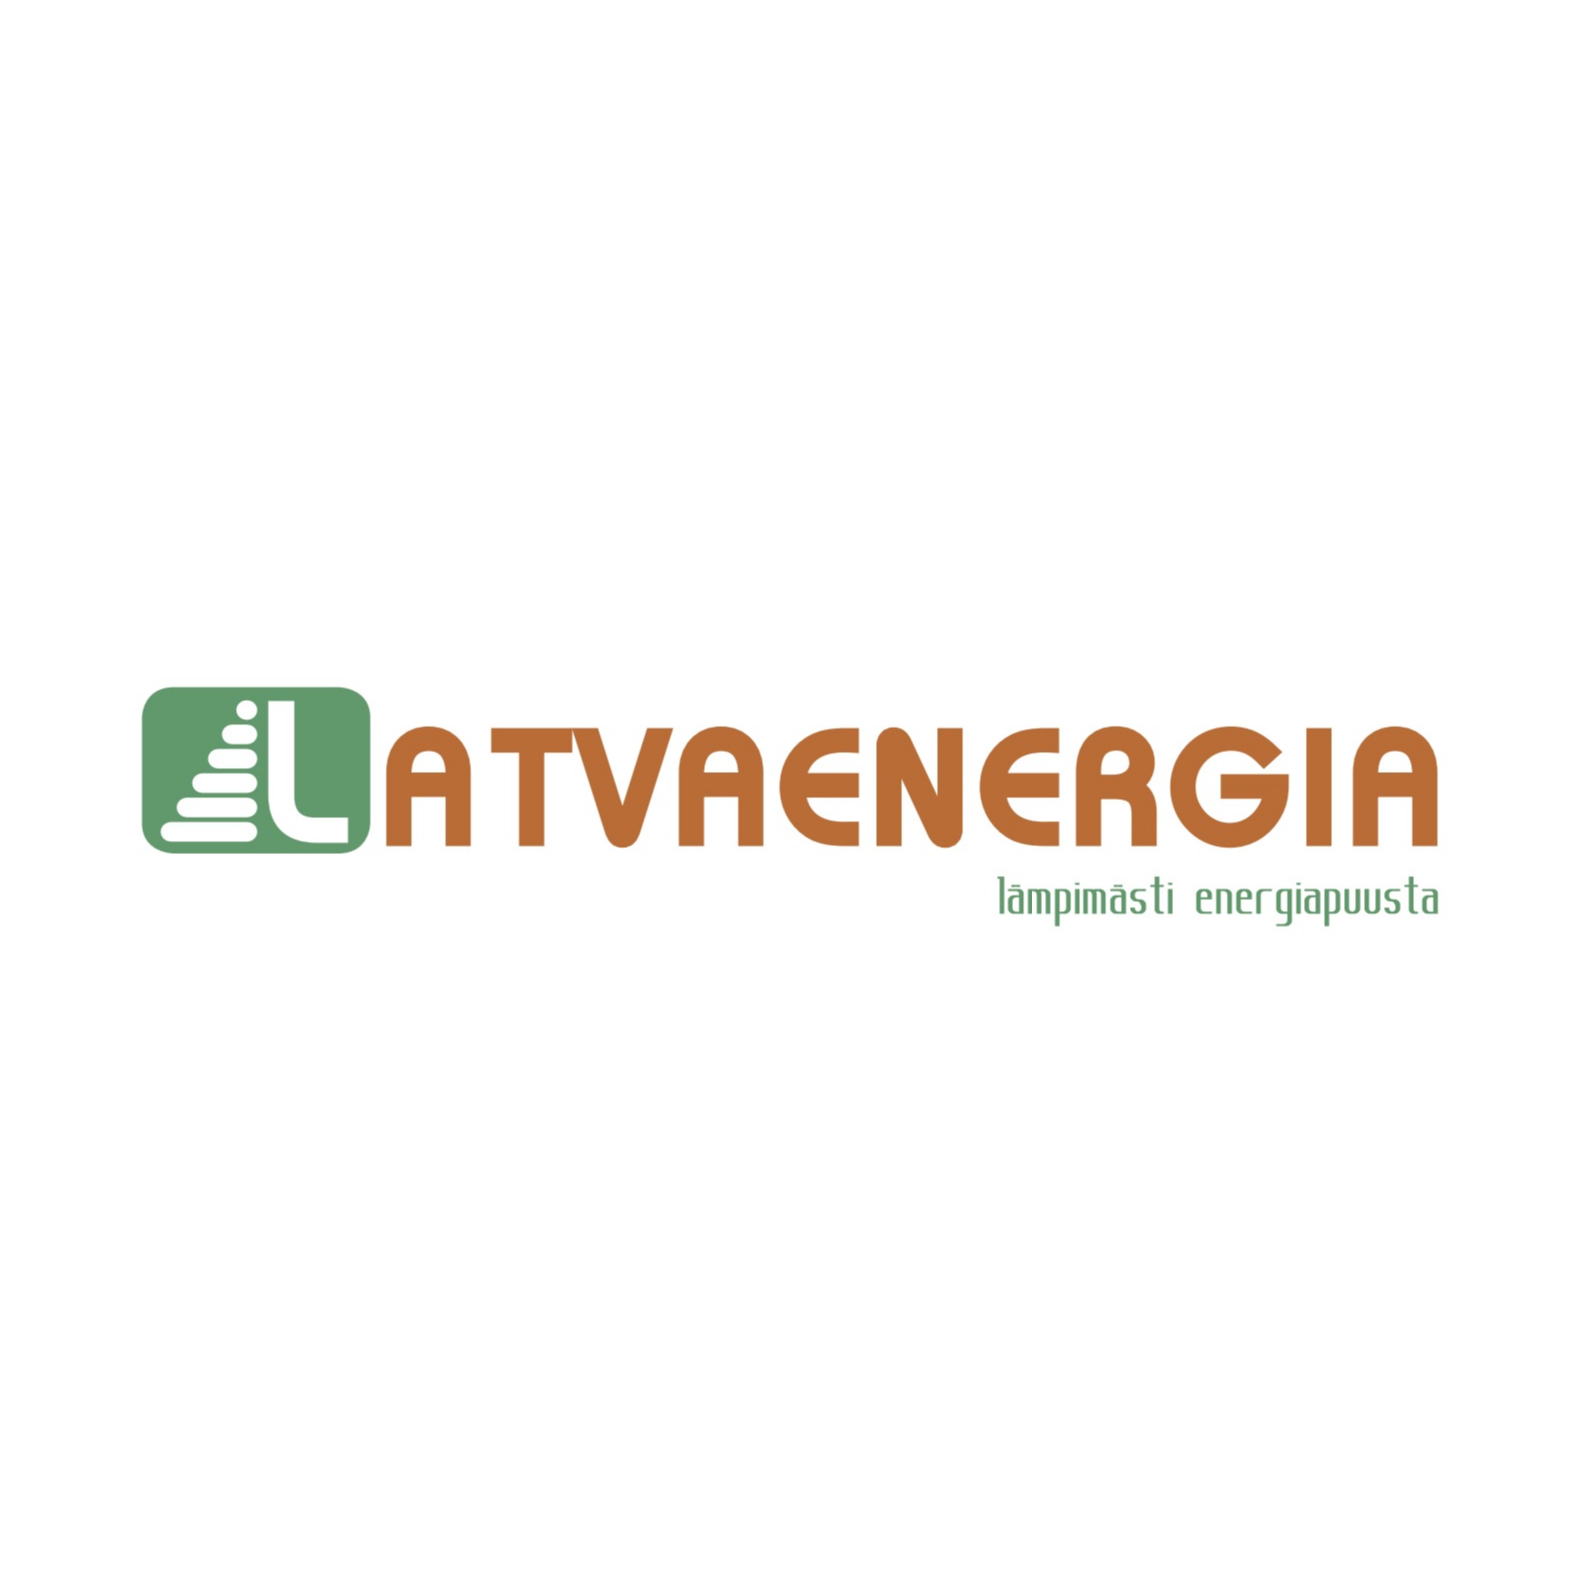 Latvaenergia Oy Logo